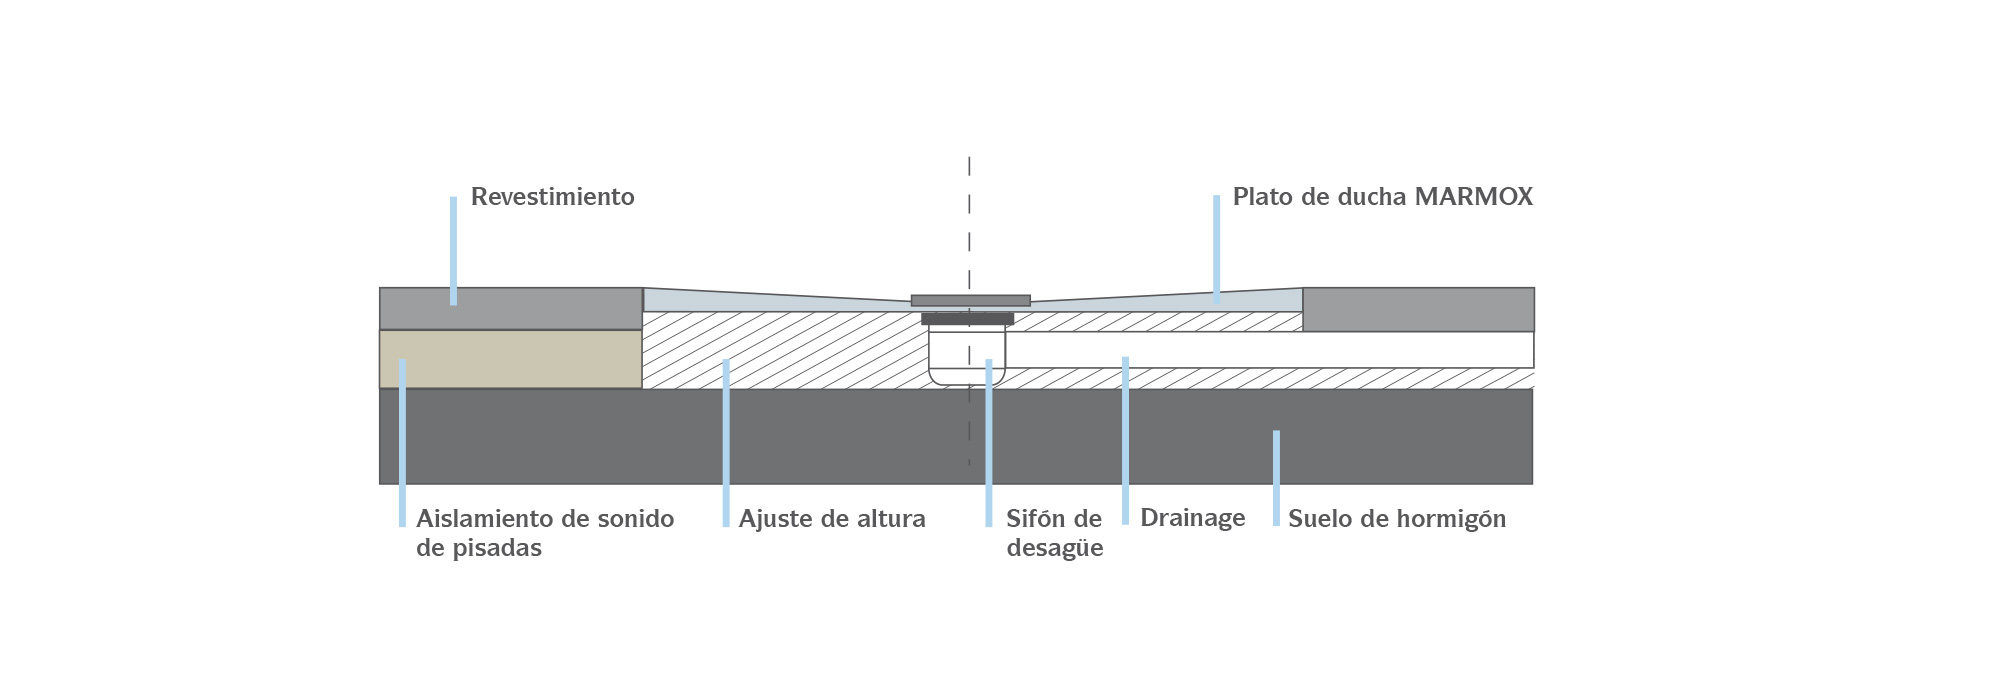 MARMOX Platos de ducha - Instalación en suelos de hormigón